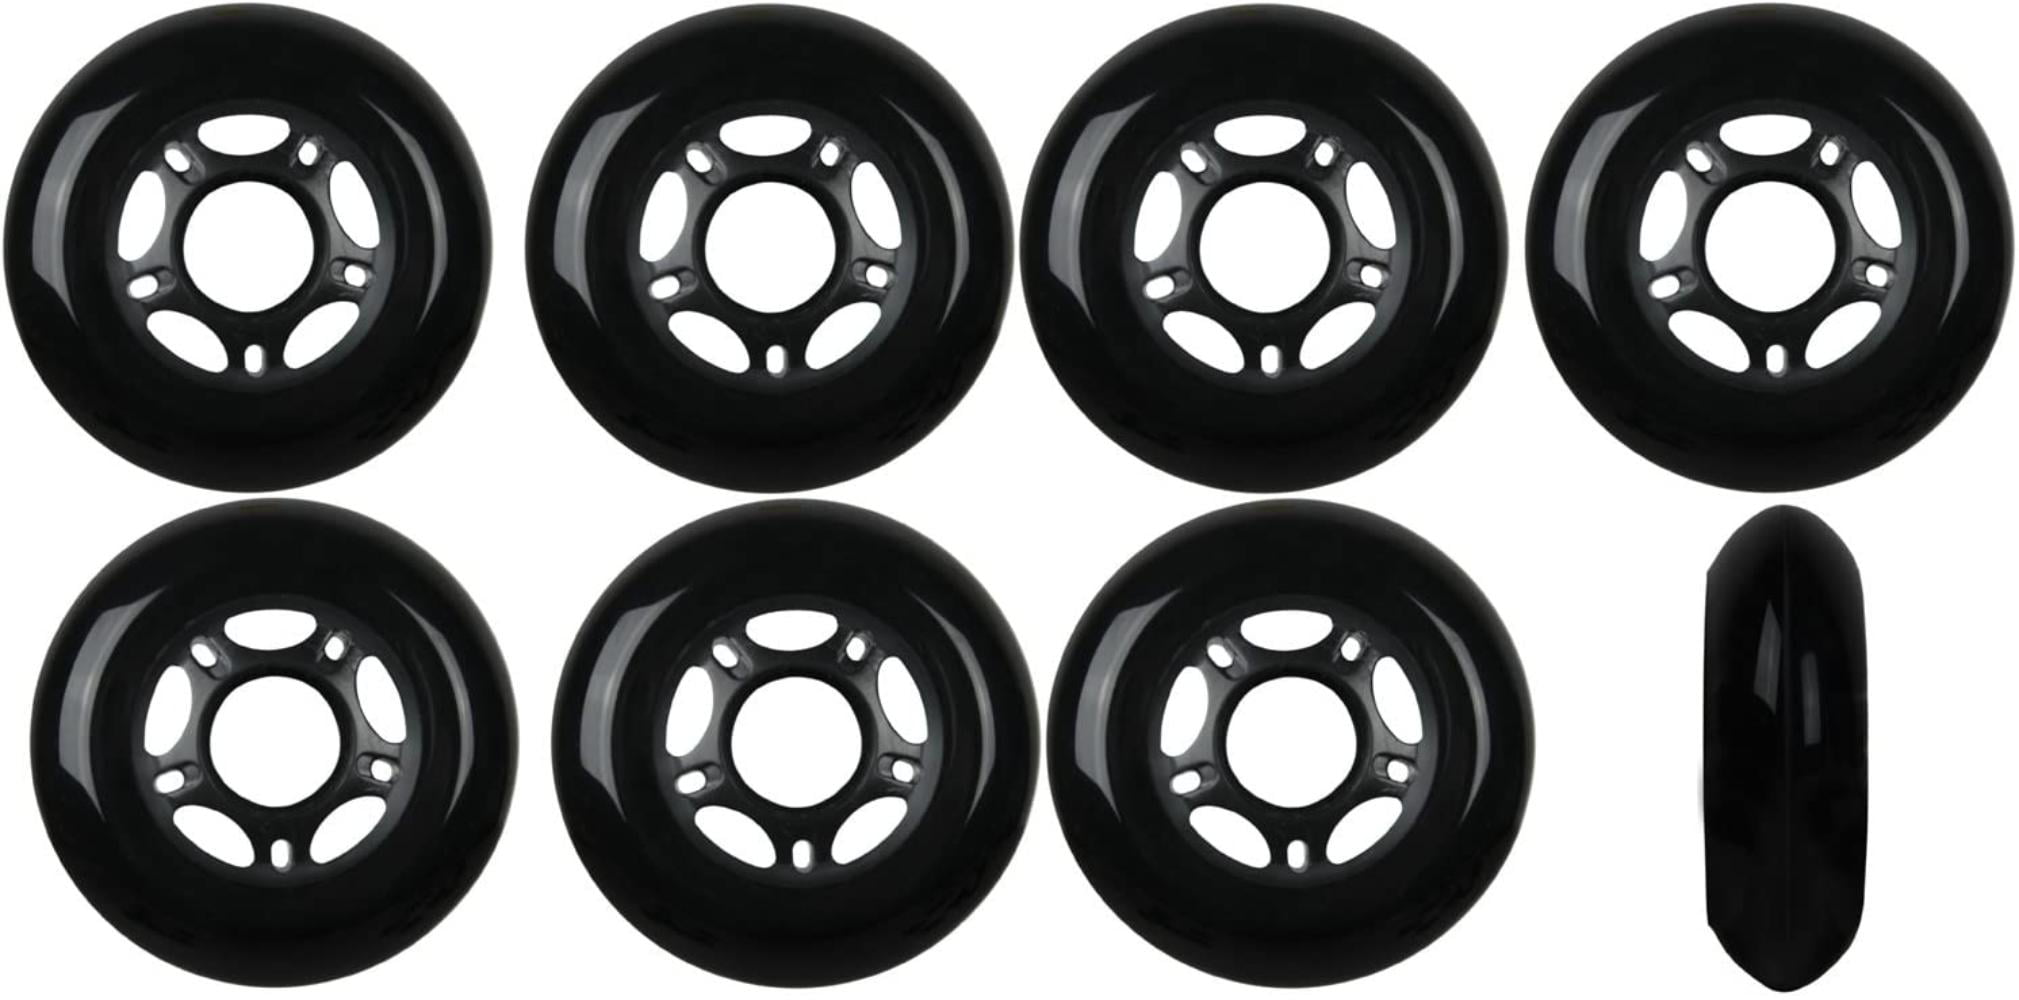 Inline Skate Wheels 80mm 82A Black Outdoor Roller Hockey 8 Pack Abec 5 Bearings 